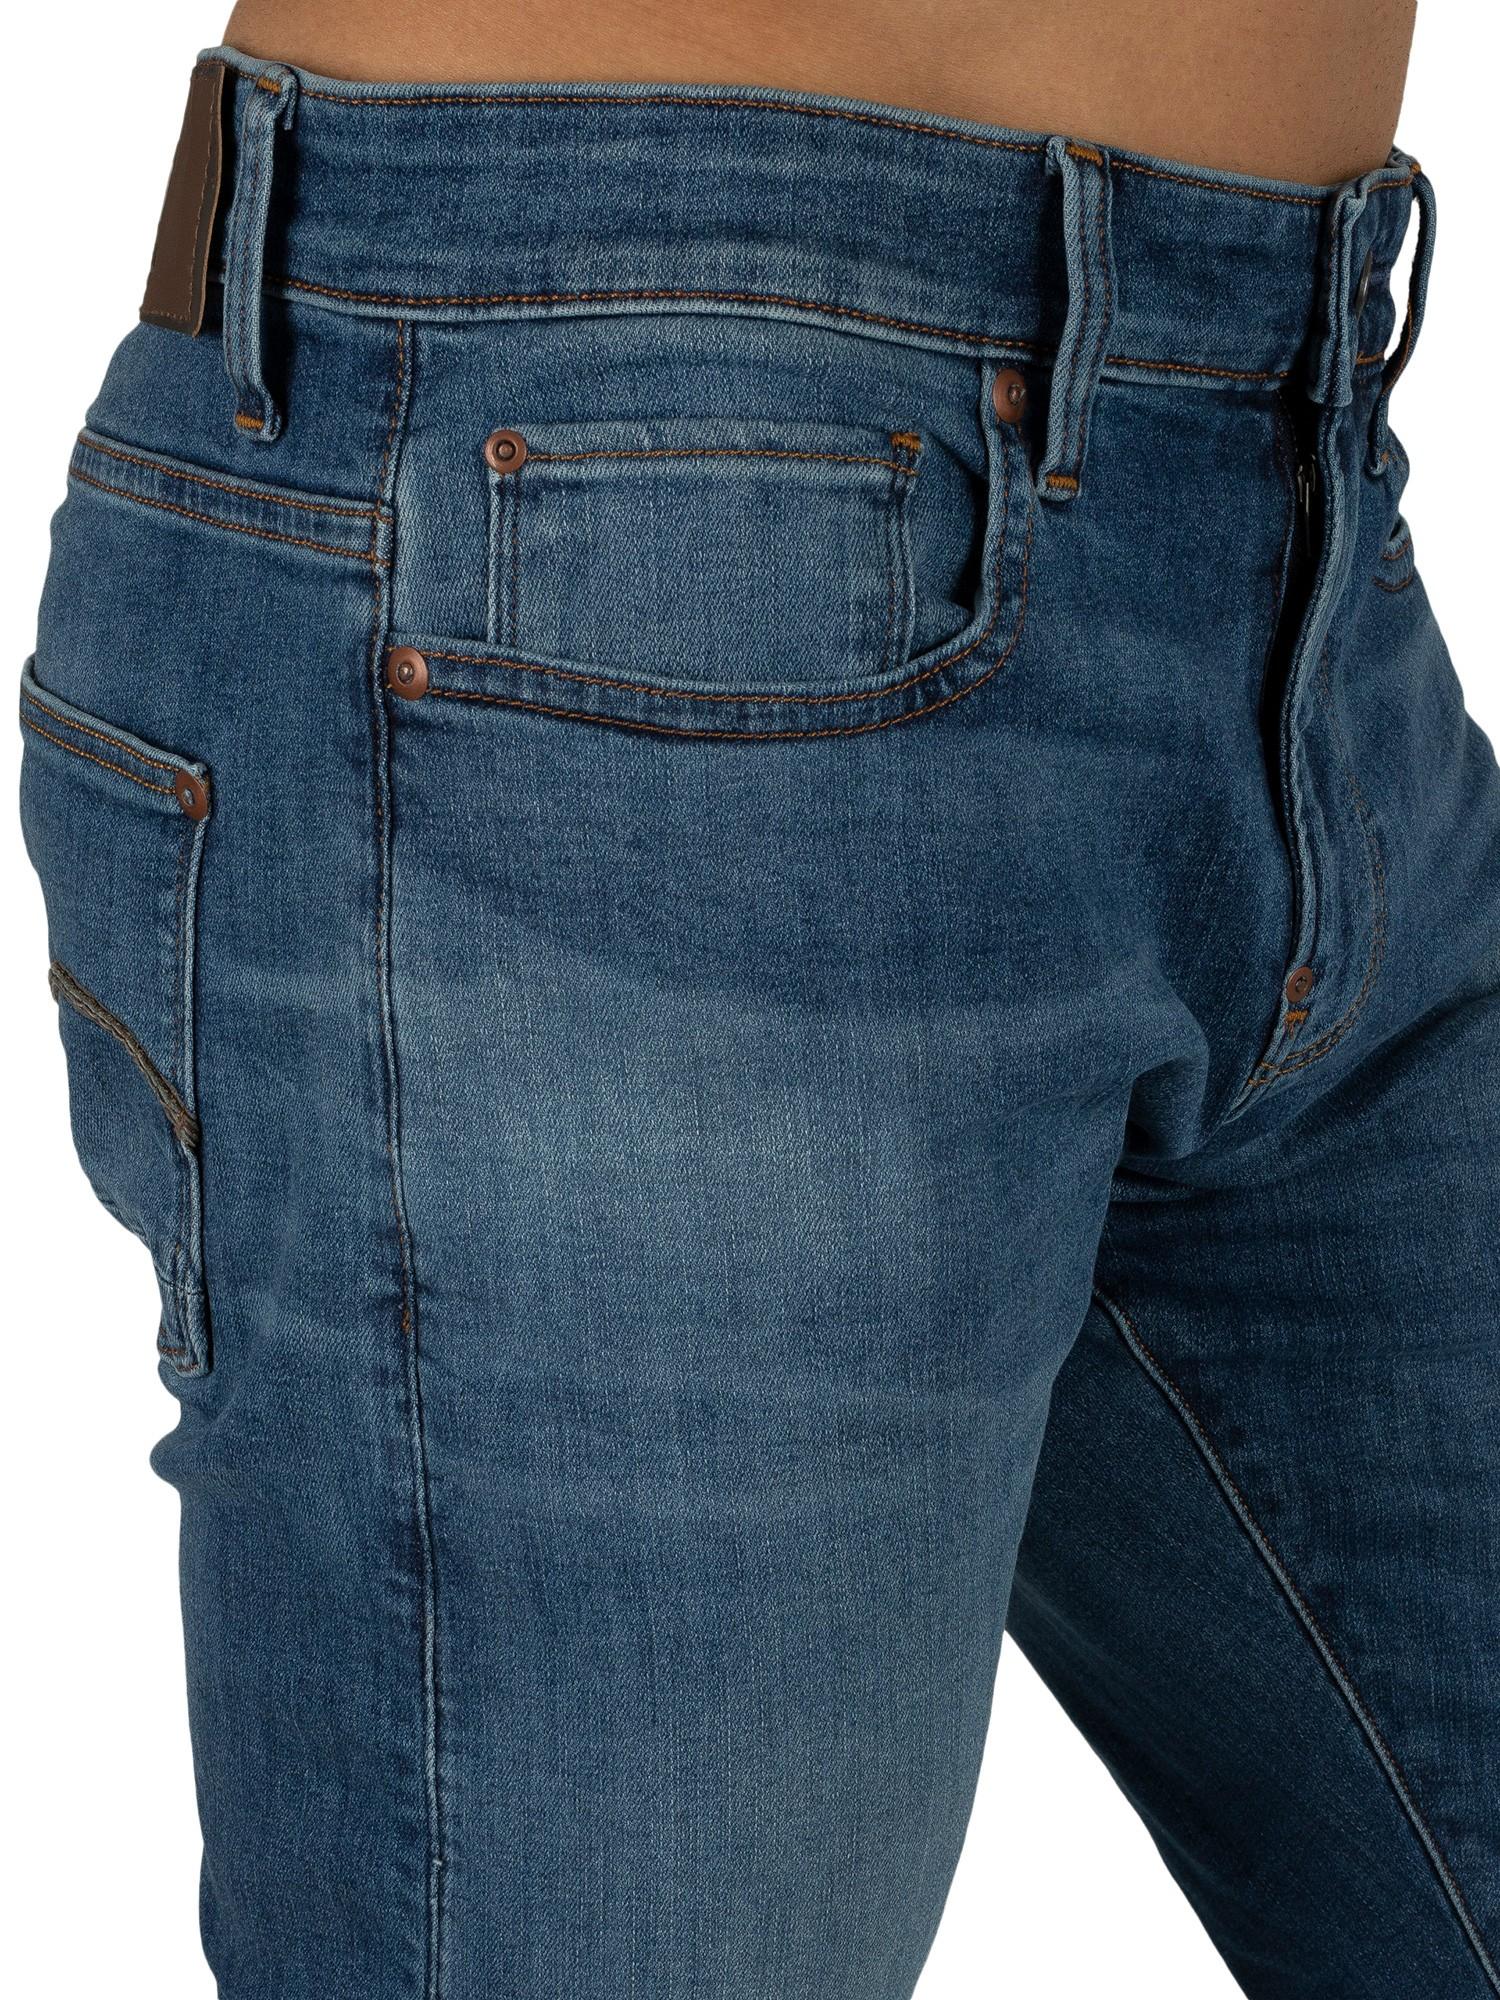 G-Star RAW Denim Revend Skinny Jeans in Blue for Men - Lyst